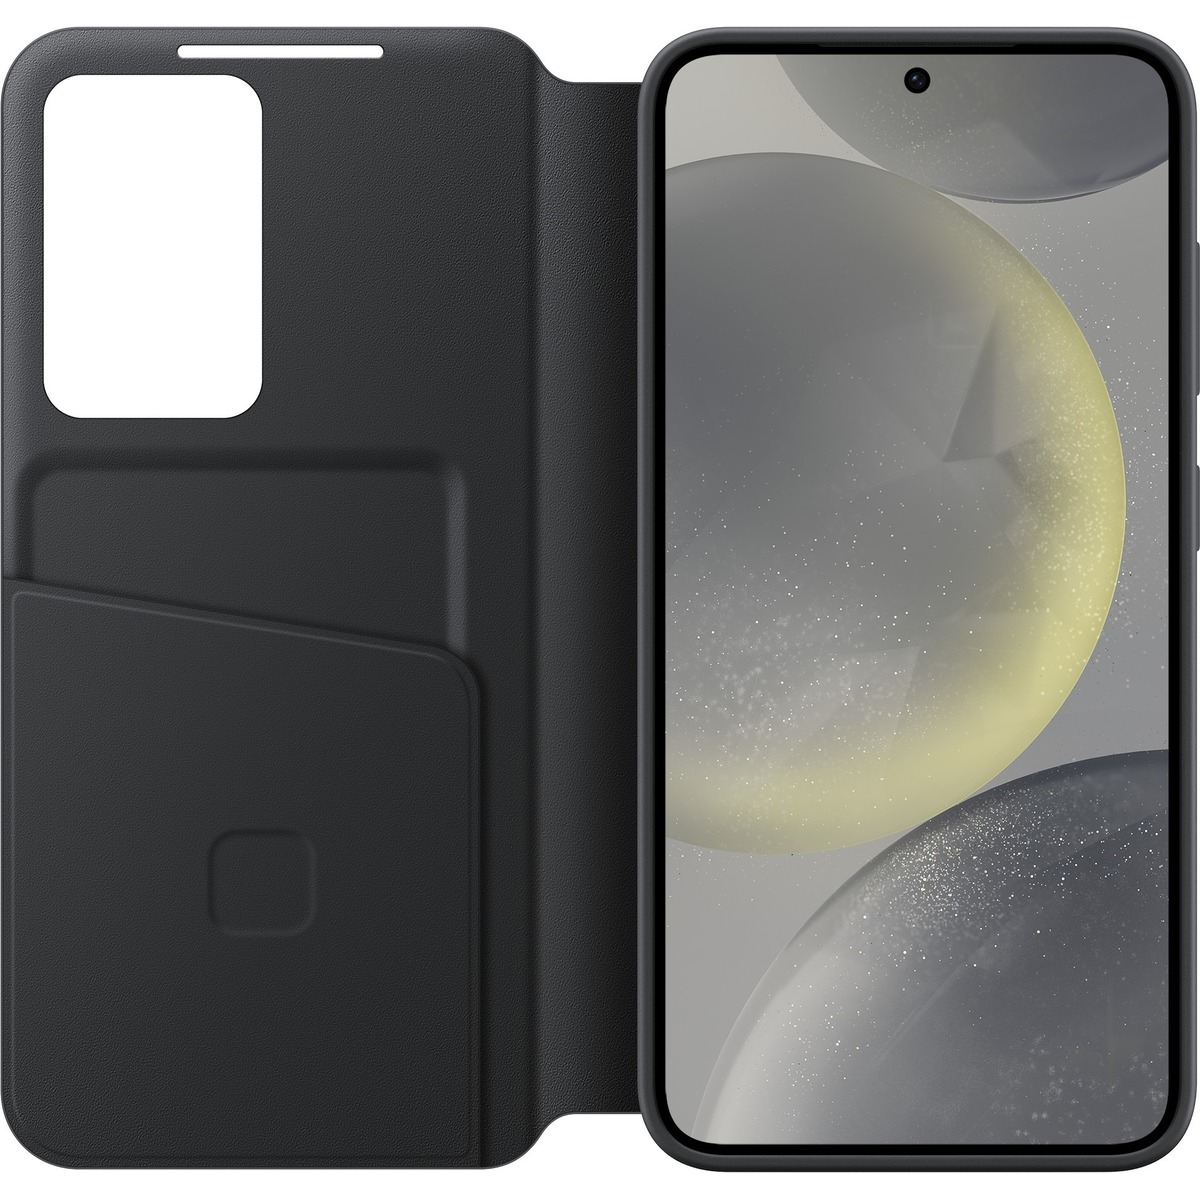 Чехол-книжка Samsung Smart View Wallet Case для смартфона Samsung Galaxy S24, черный